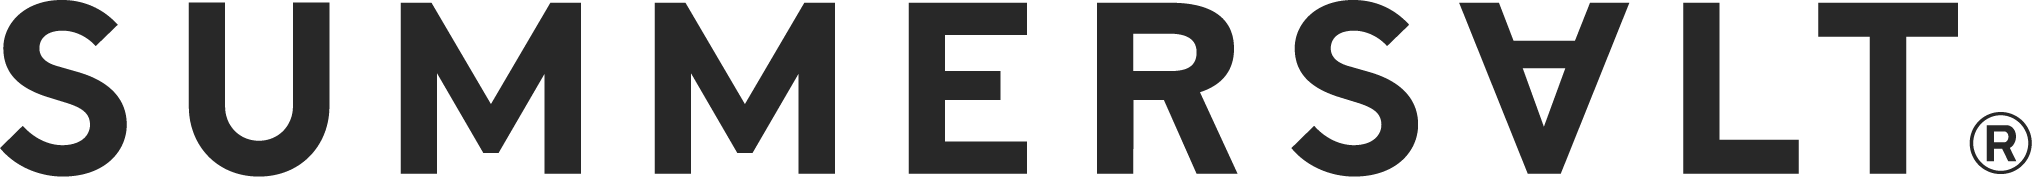 Summersalt, logo with transparent background